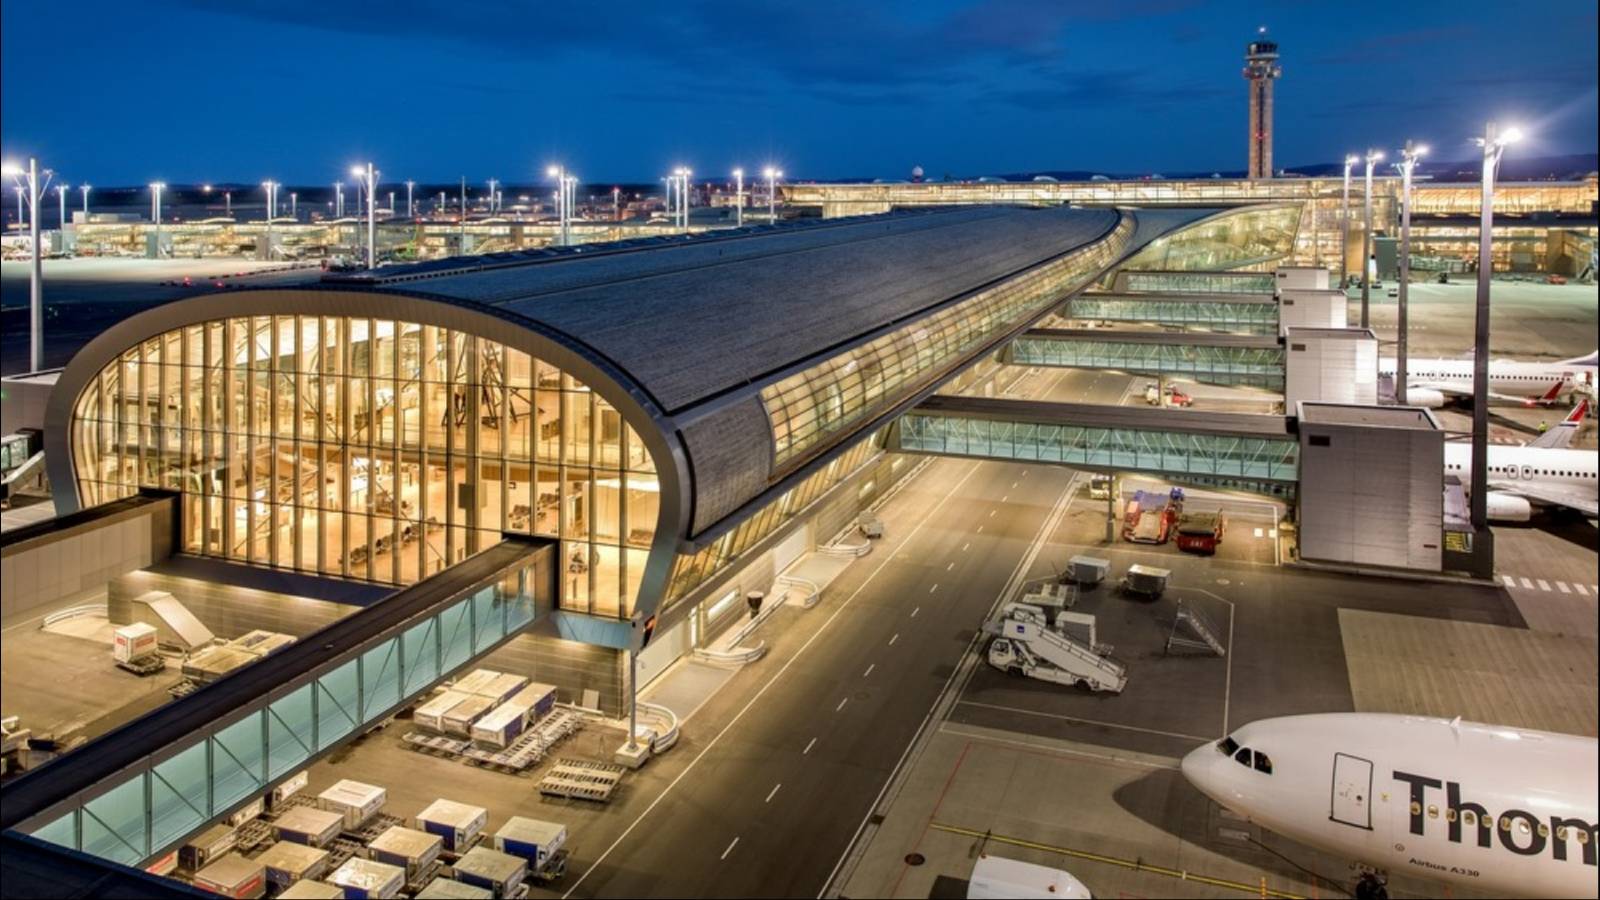 Аэропорт осло: норвежское гостеприимство в деталях